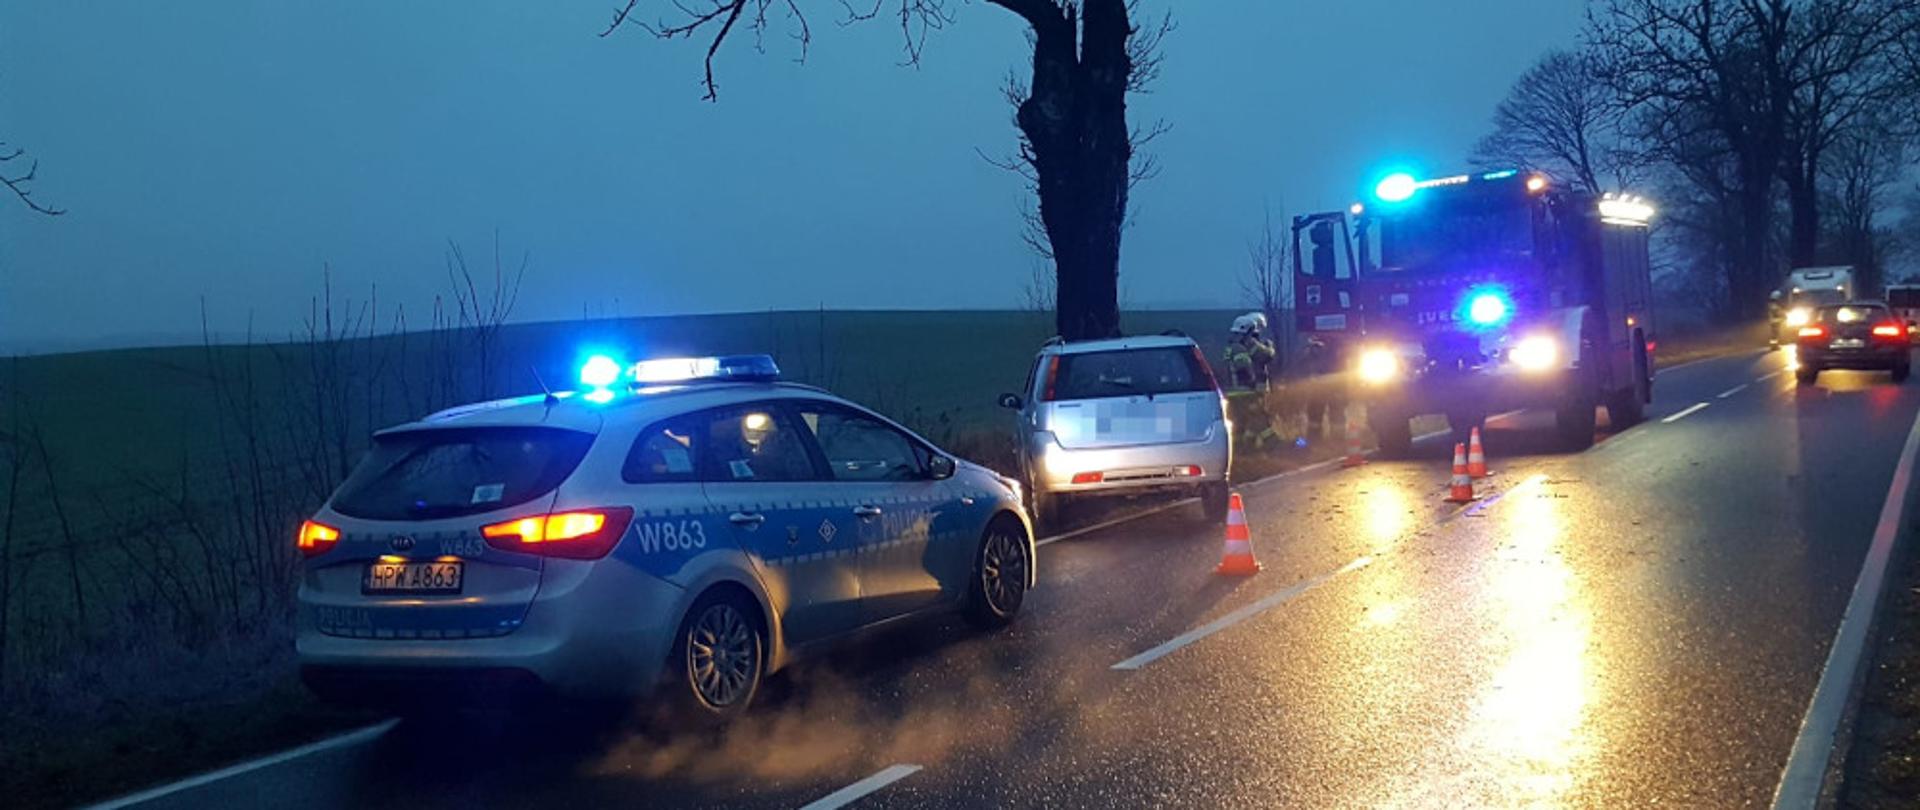 Wypadek samochodu osobowego przy miejscowości Barwice - pojazd uderzył w drzewo, stoi częściowo na pasie drogi.